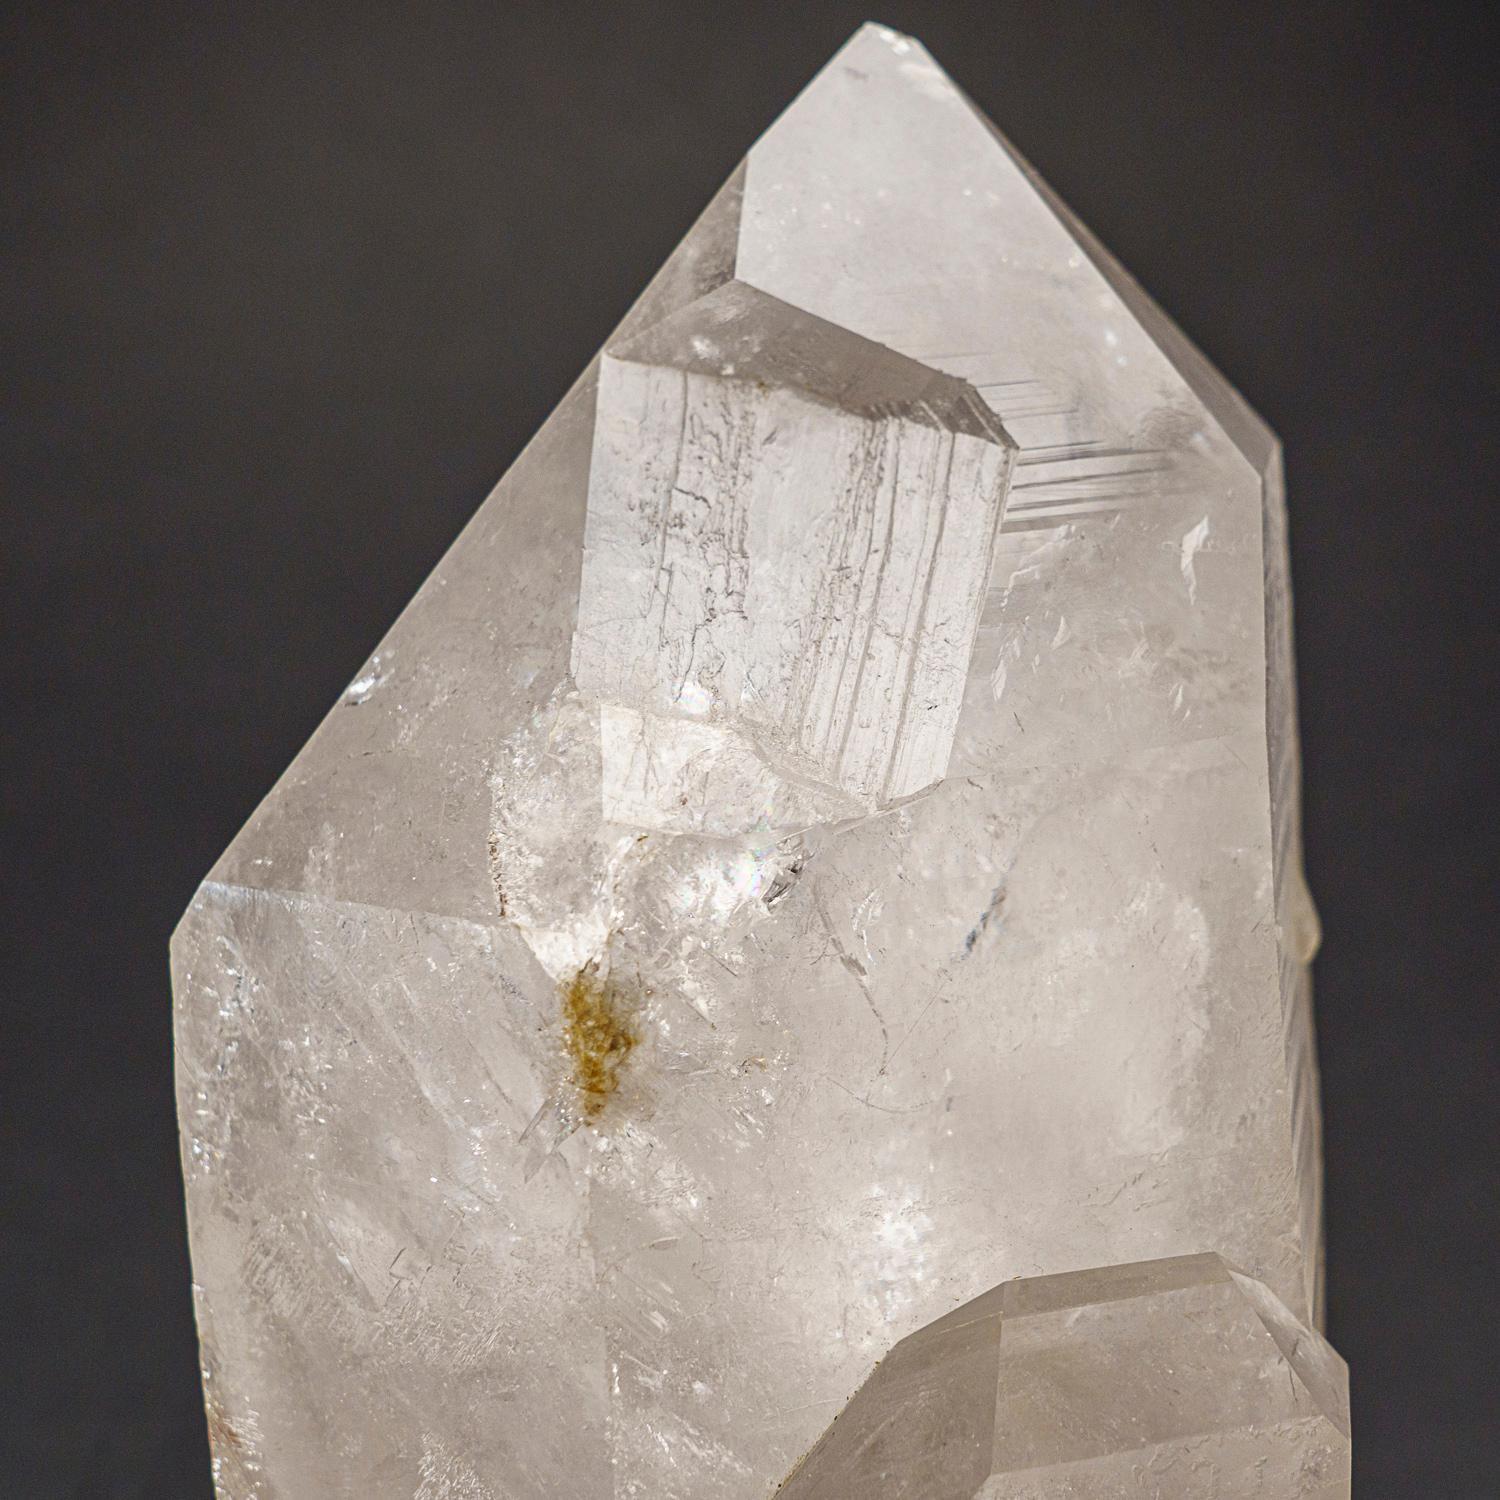 Cette pointe de cristal de quartz clair brésilien est d'une qualité muséale supérieure, avec une finition miroir polie sur toutes les faces. Connue sous le nom de 